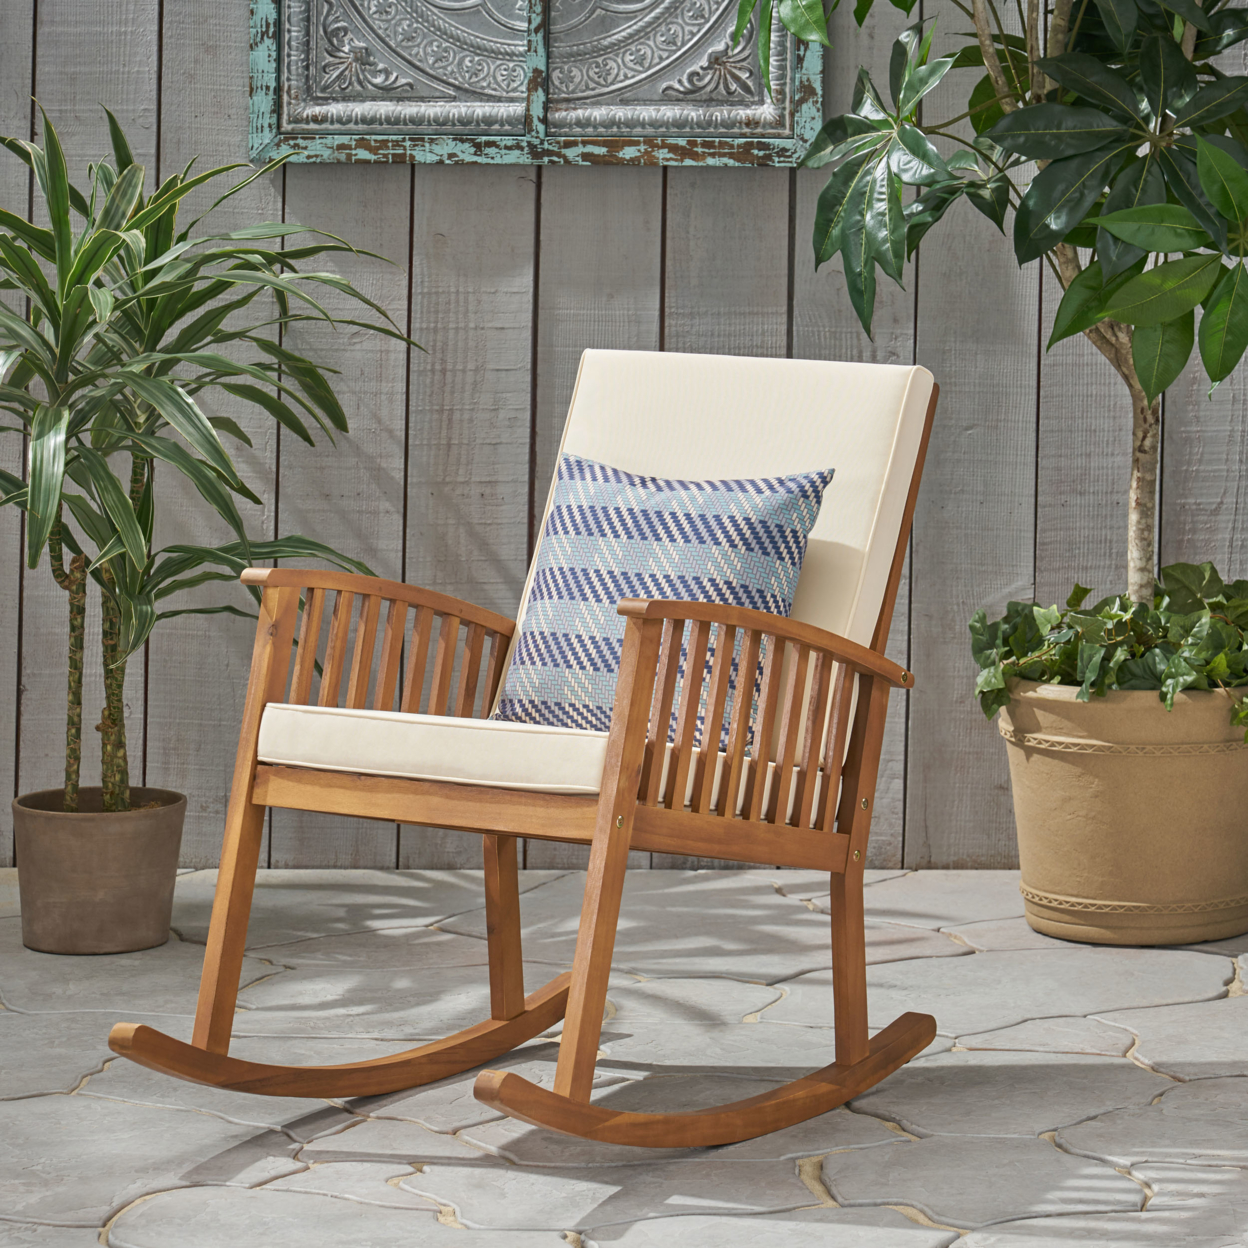 Beulah Outdoor Acacia Wood Rocking Chair - Brown Patina Finish, Cream